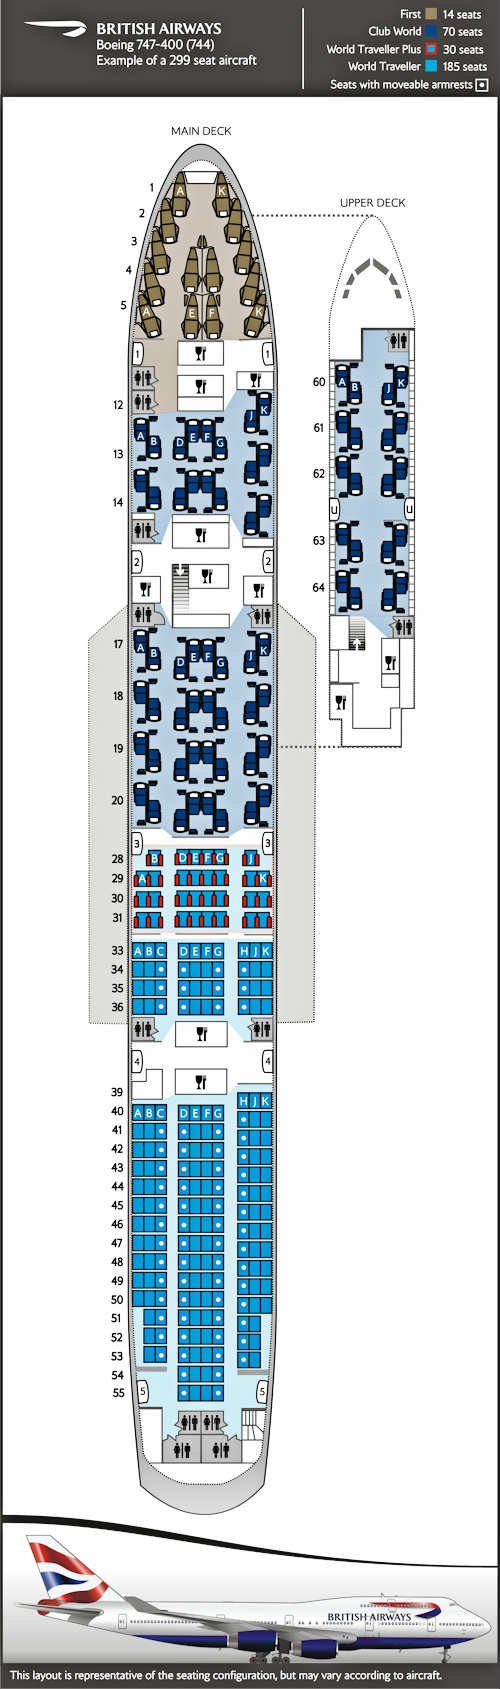 보잉 747-400 좌석 배치도, 4개 클래스 299석의 좌석 배열